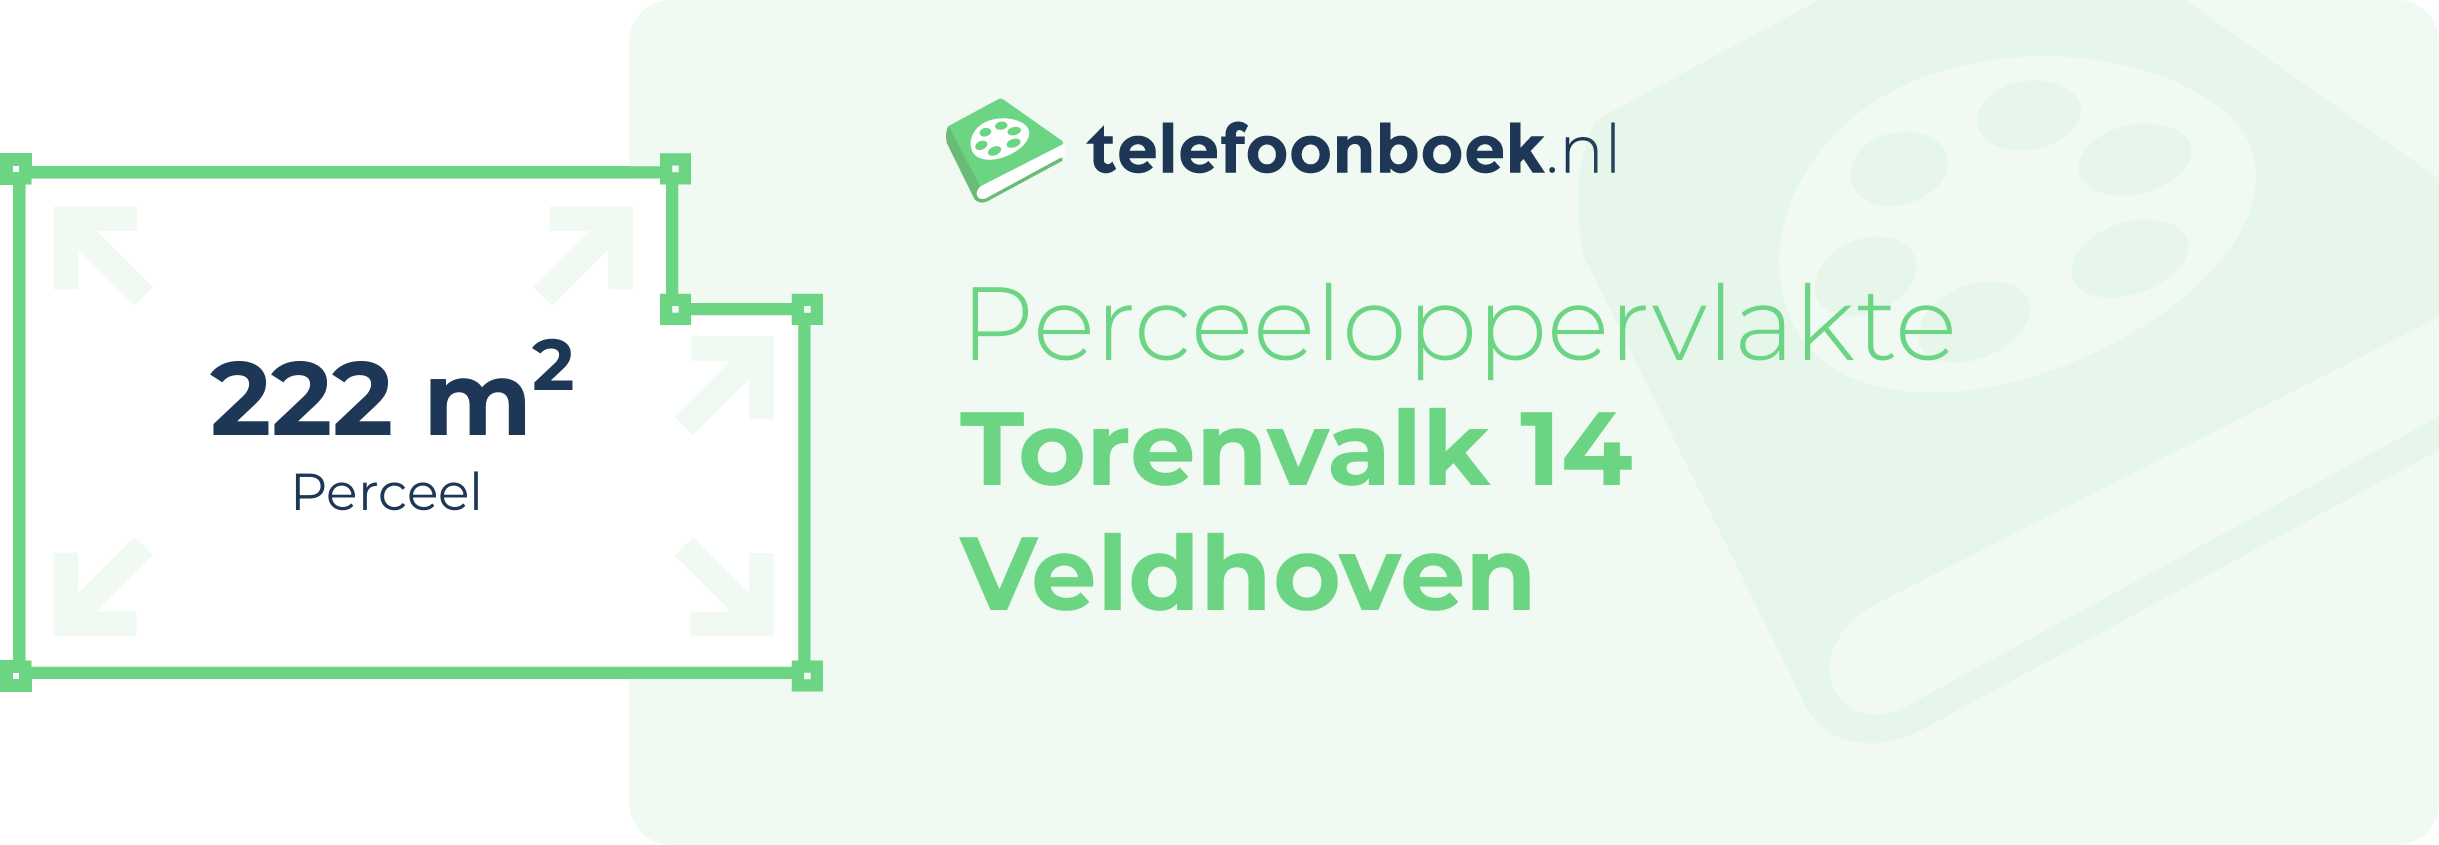 Perceeloppervlakte Torenvalk 14 Veldhoven